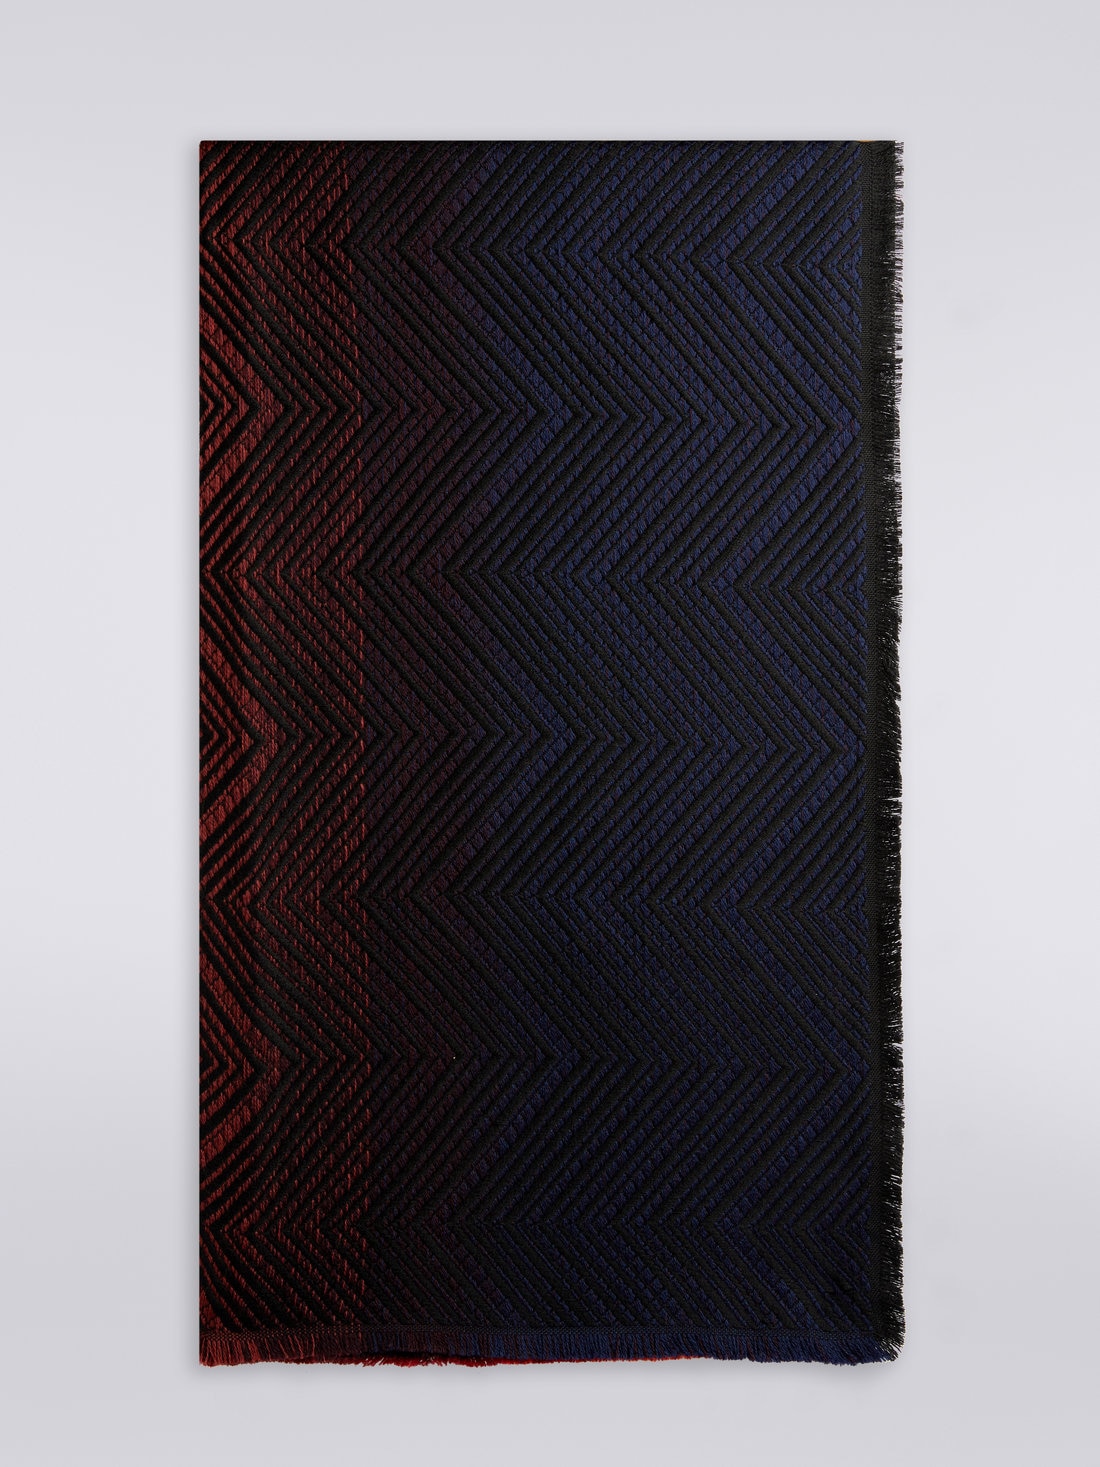 Châle en laine à chevrons avec bords frangés, Multicolore  - 8053147023274 - 0